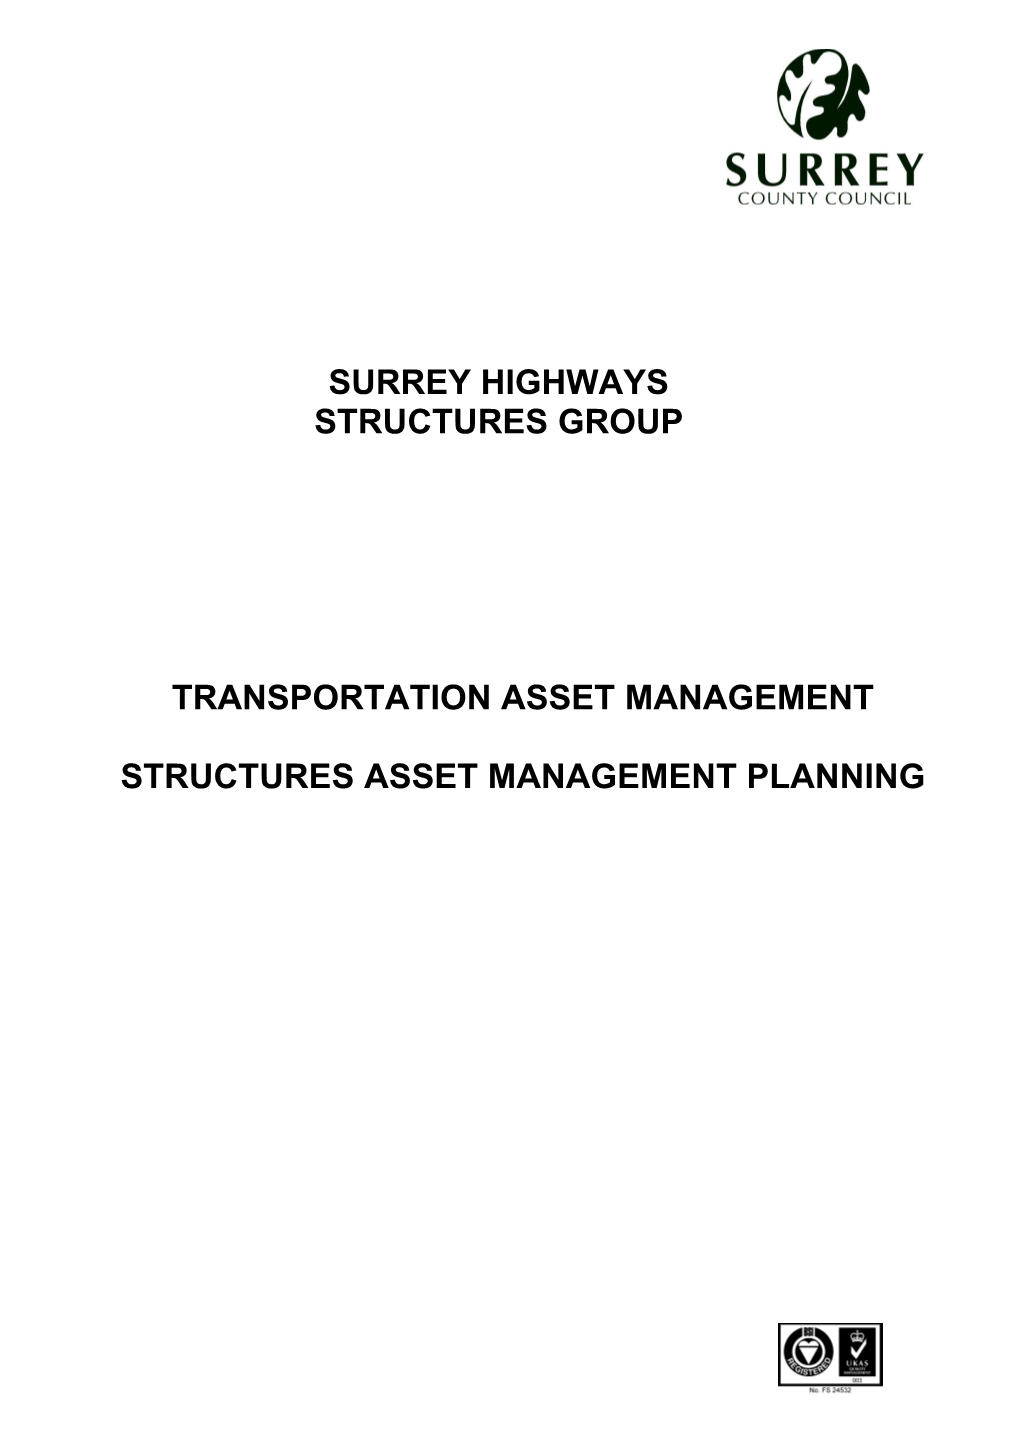 Structures Asset Management Planning